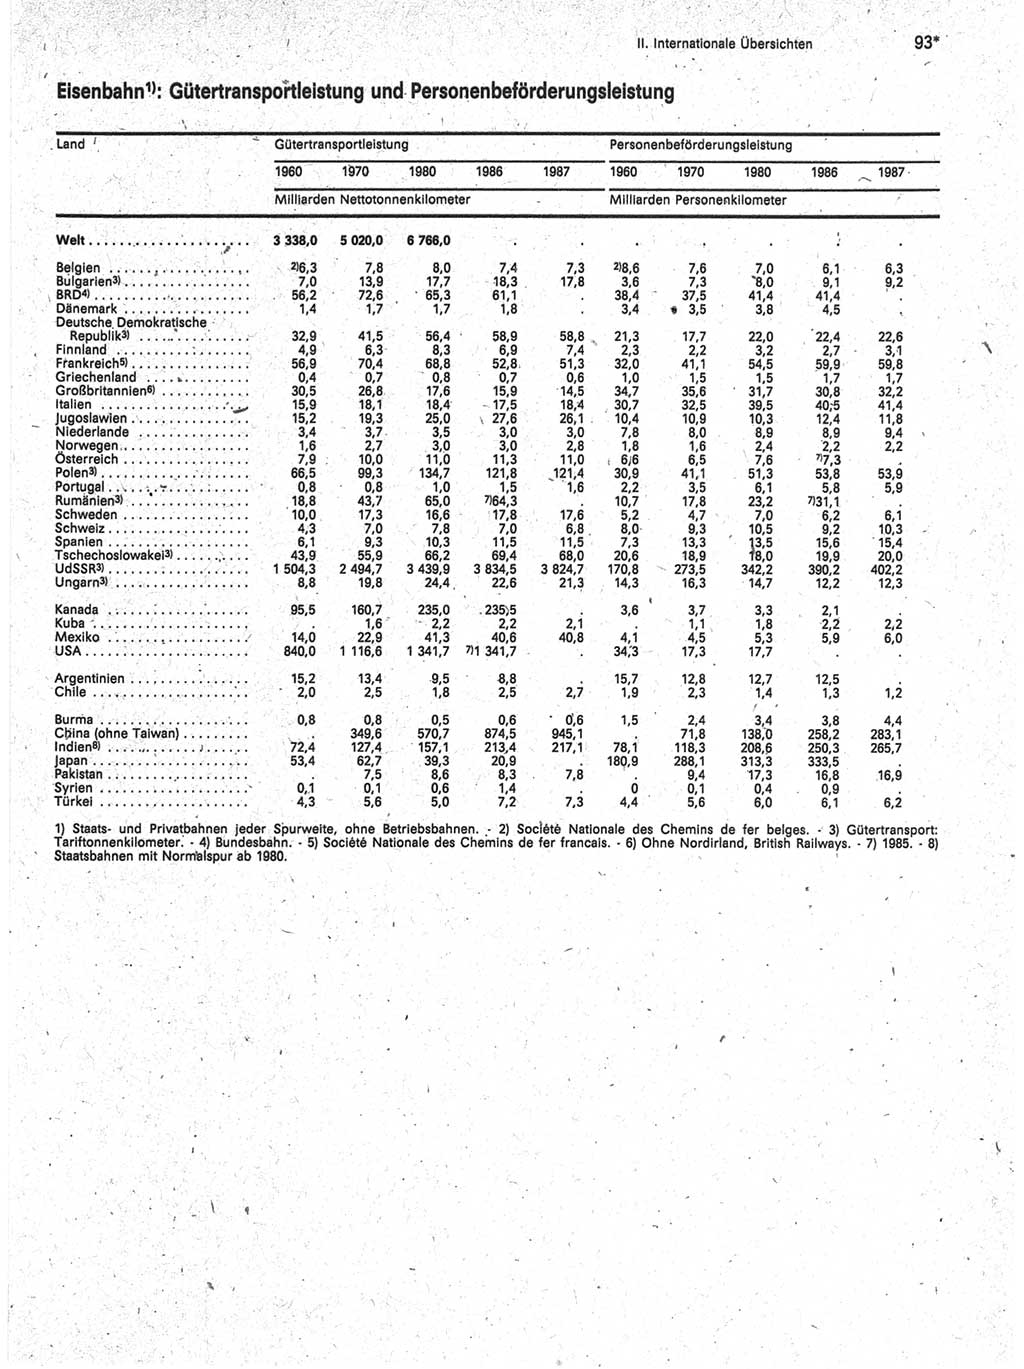 Statistisches Jahrbuch der Deutschen Demokratischen Republik (DDR) 1989, Seite 93 (Stat. Jb. DDR 1989, S. 93)